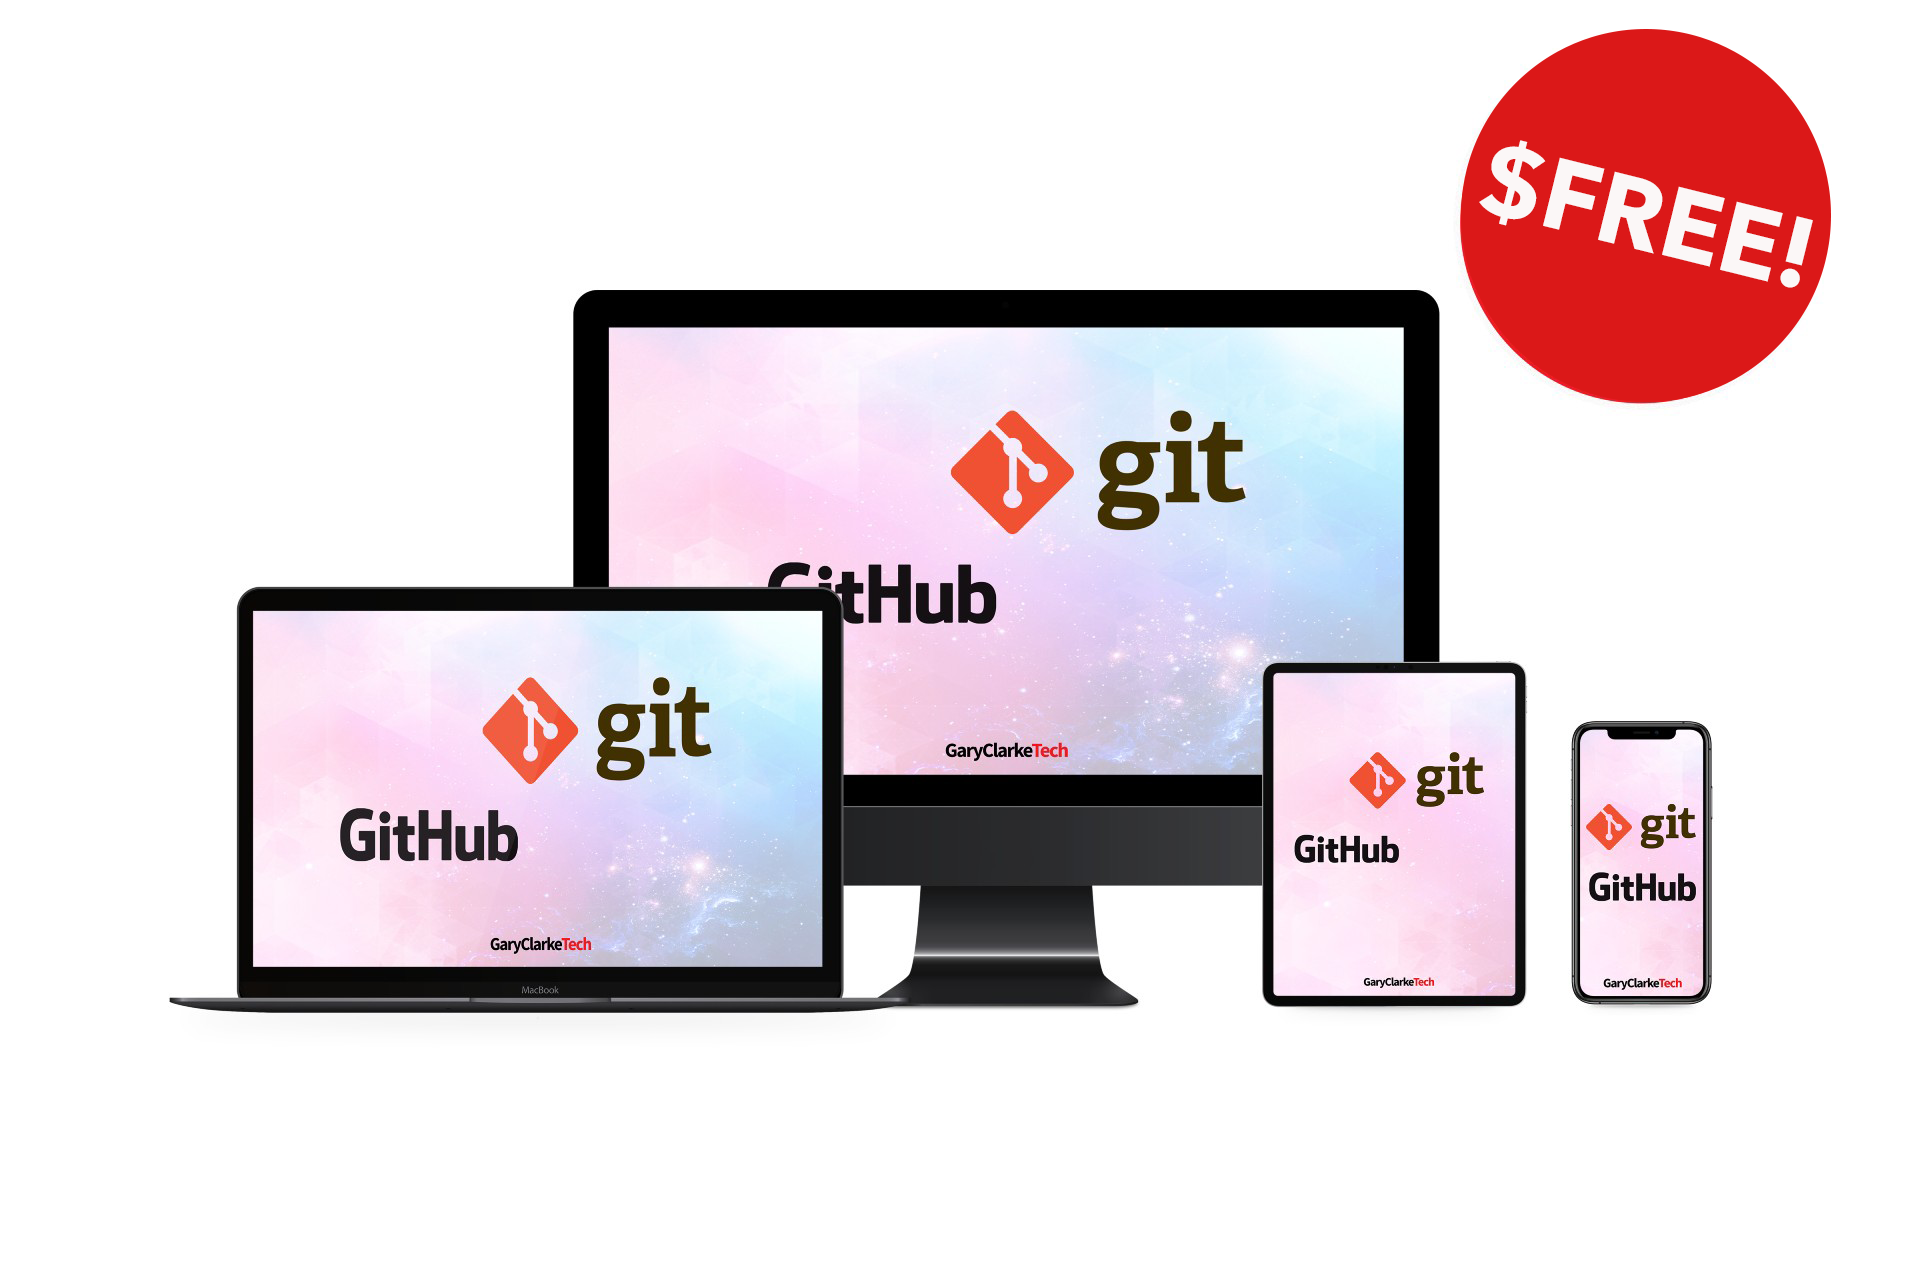 Git and Github logos